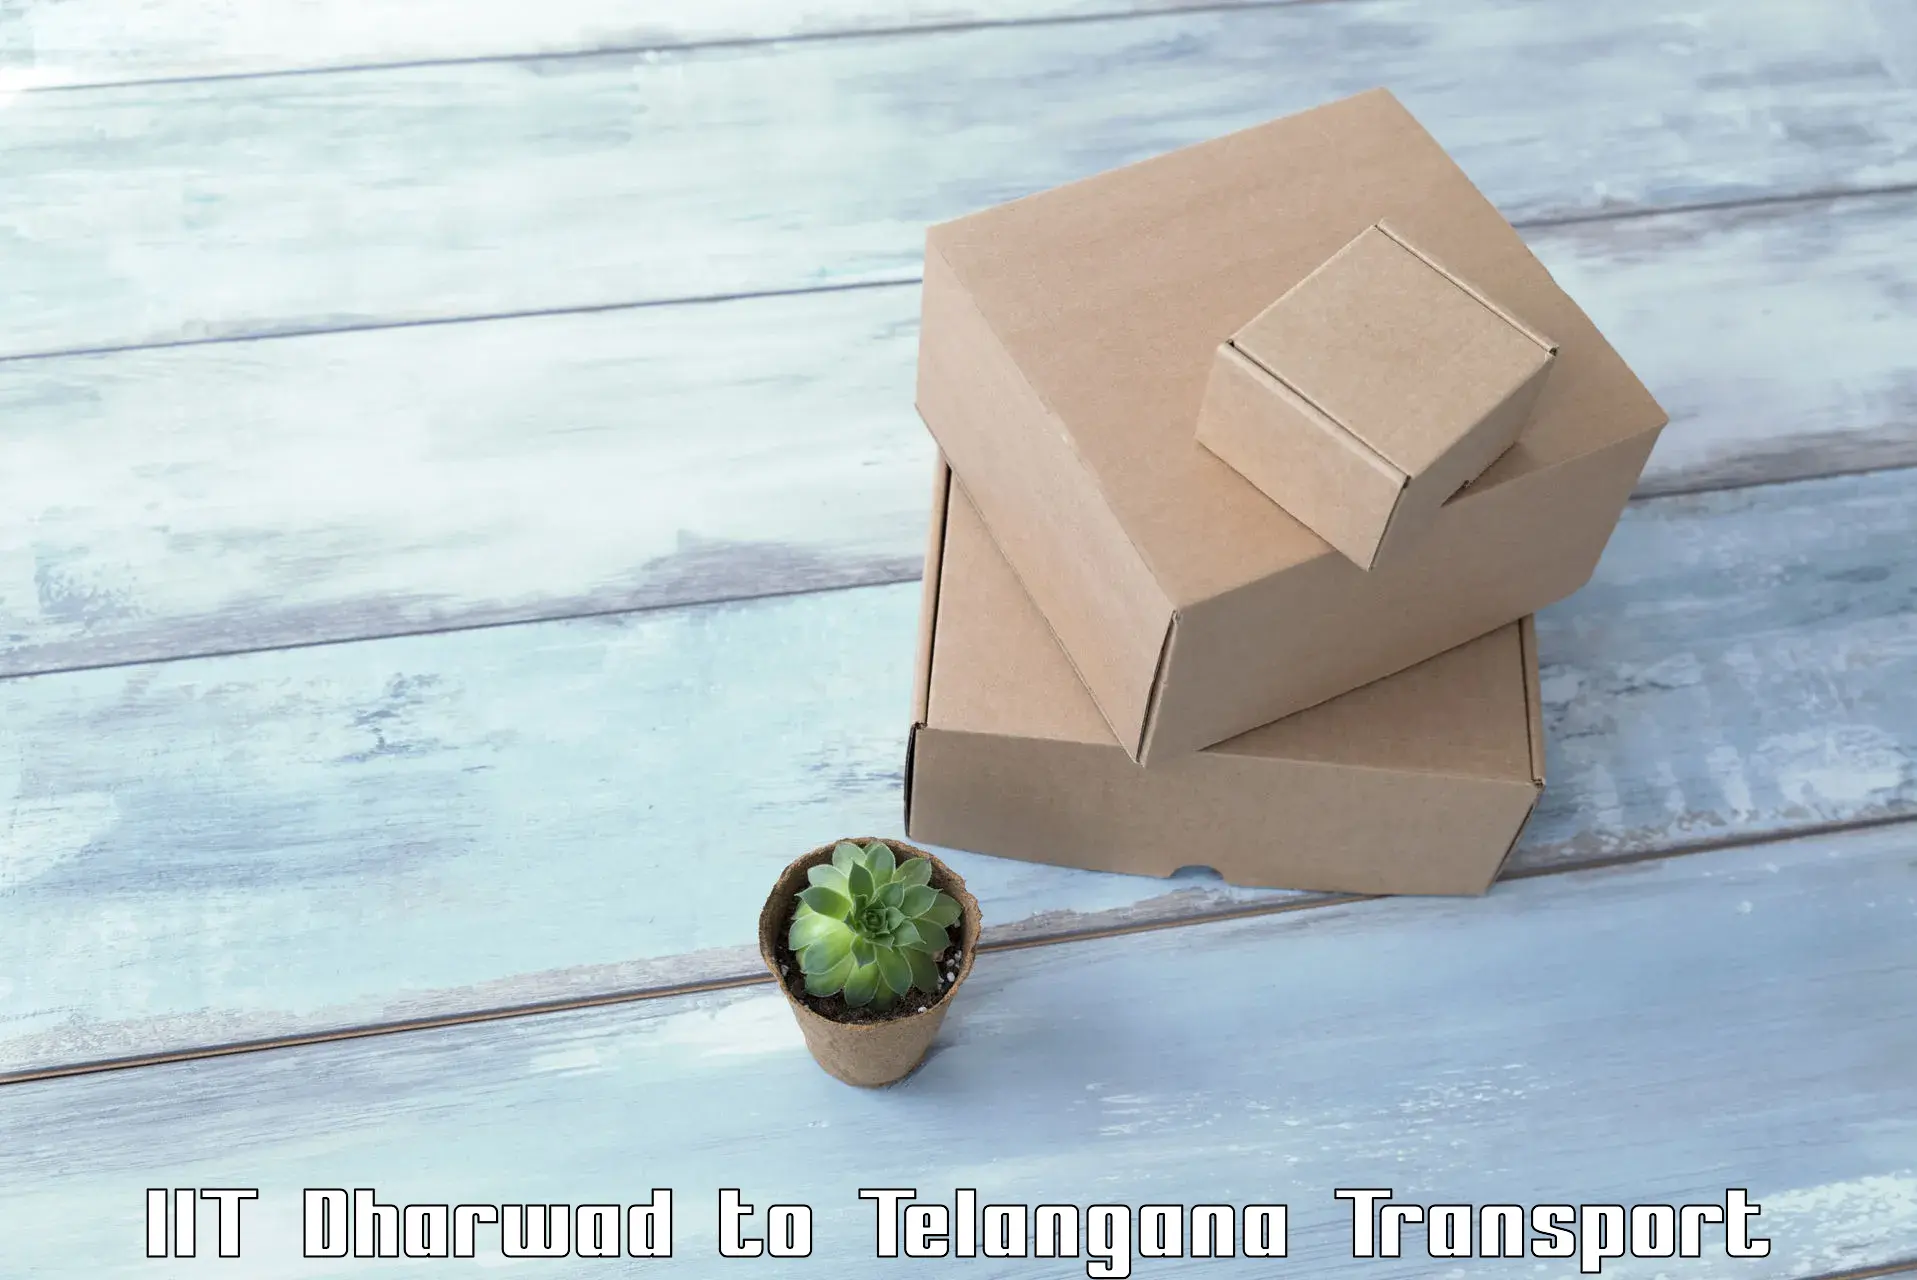 Cargo transport services IIT Dharwad to Tadoor